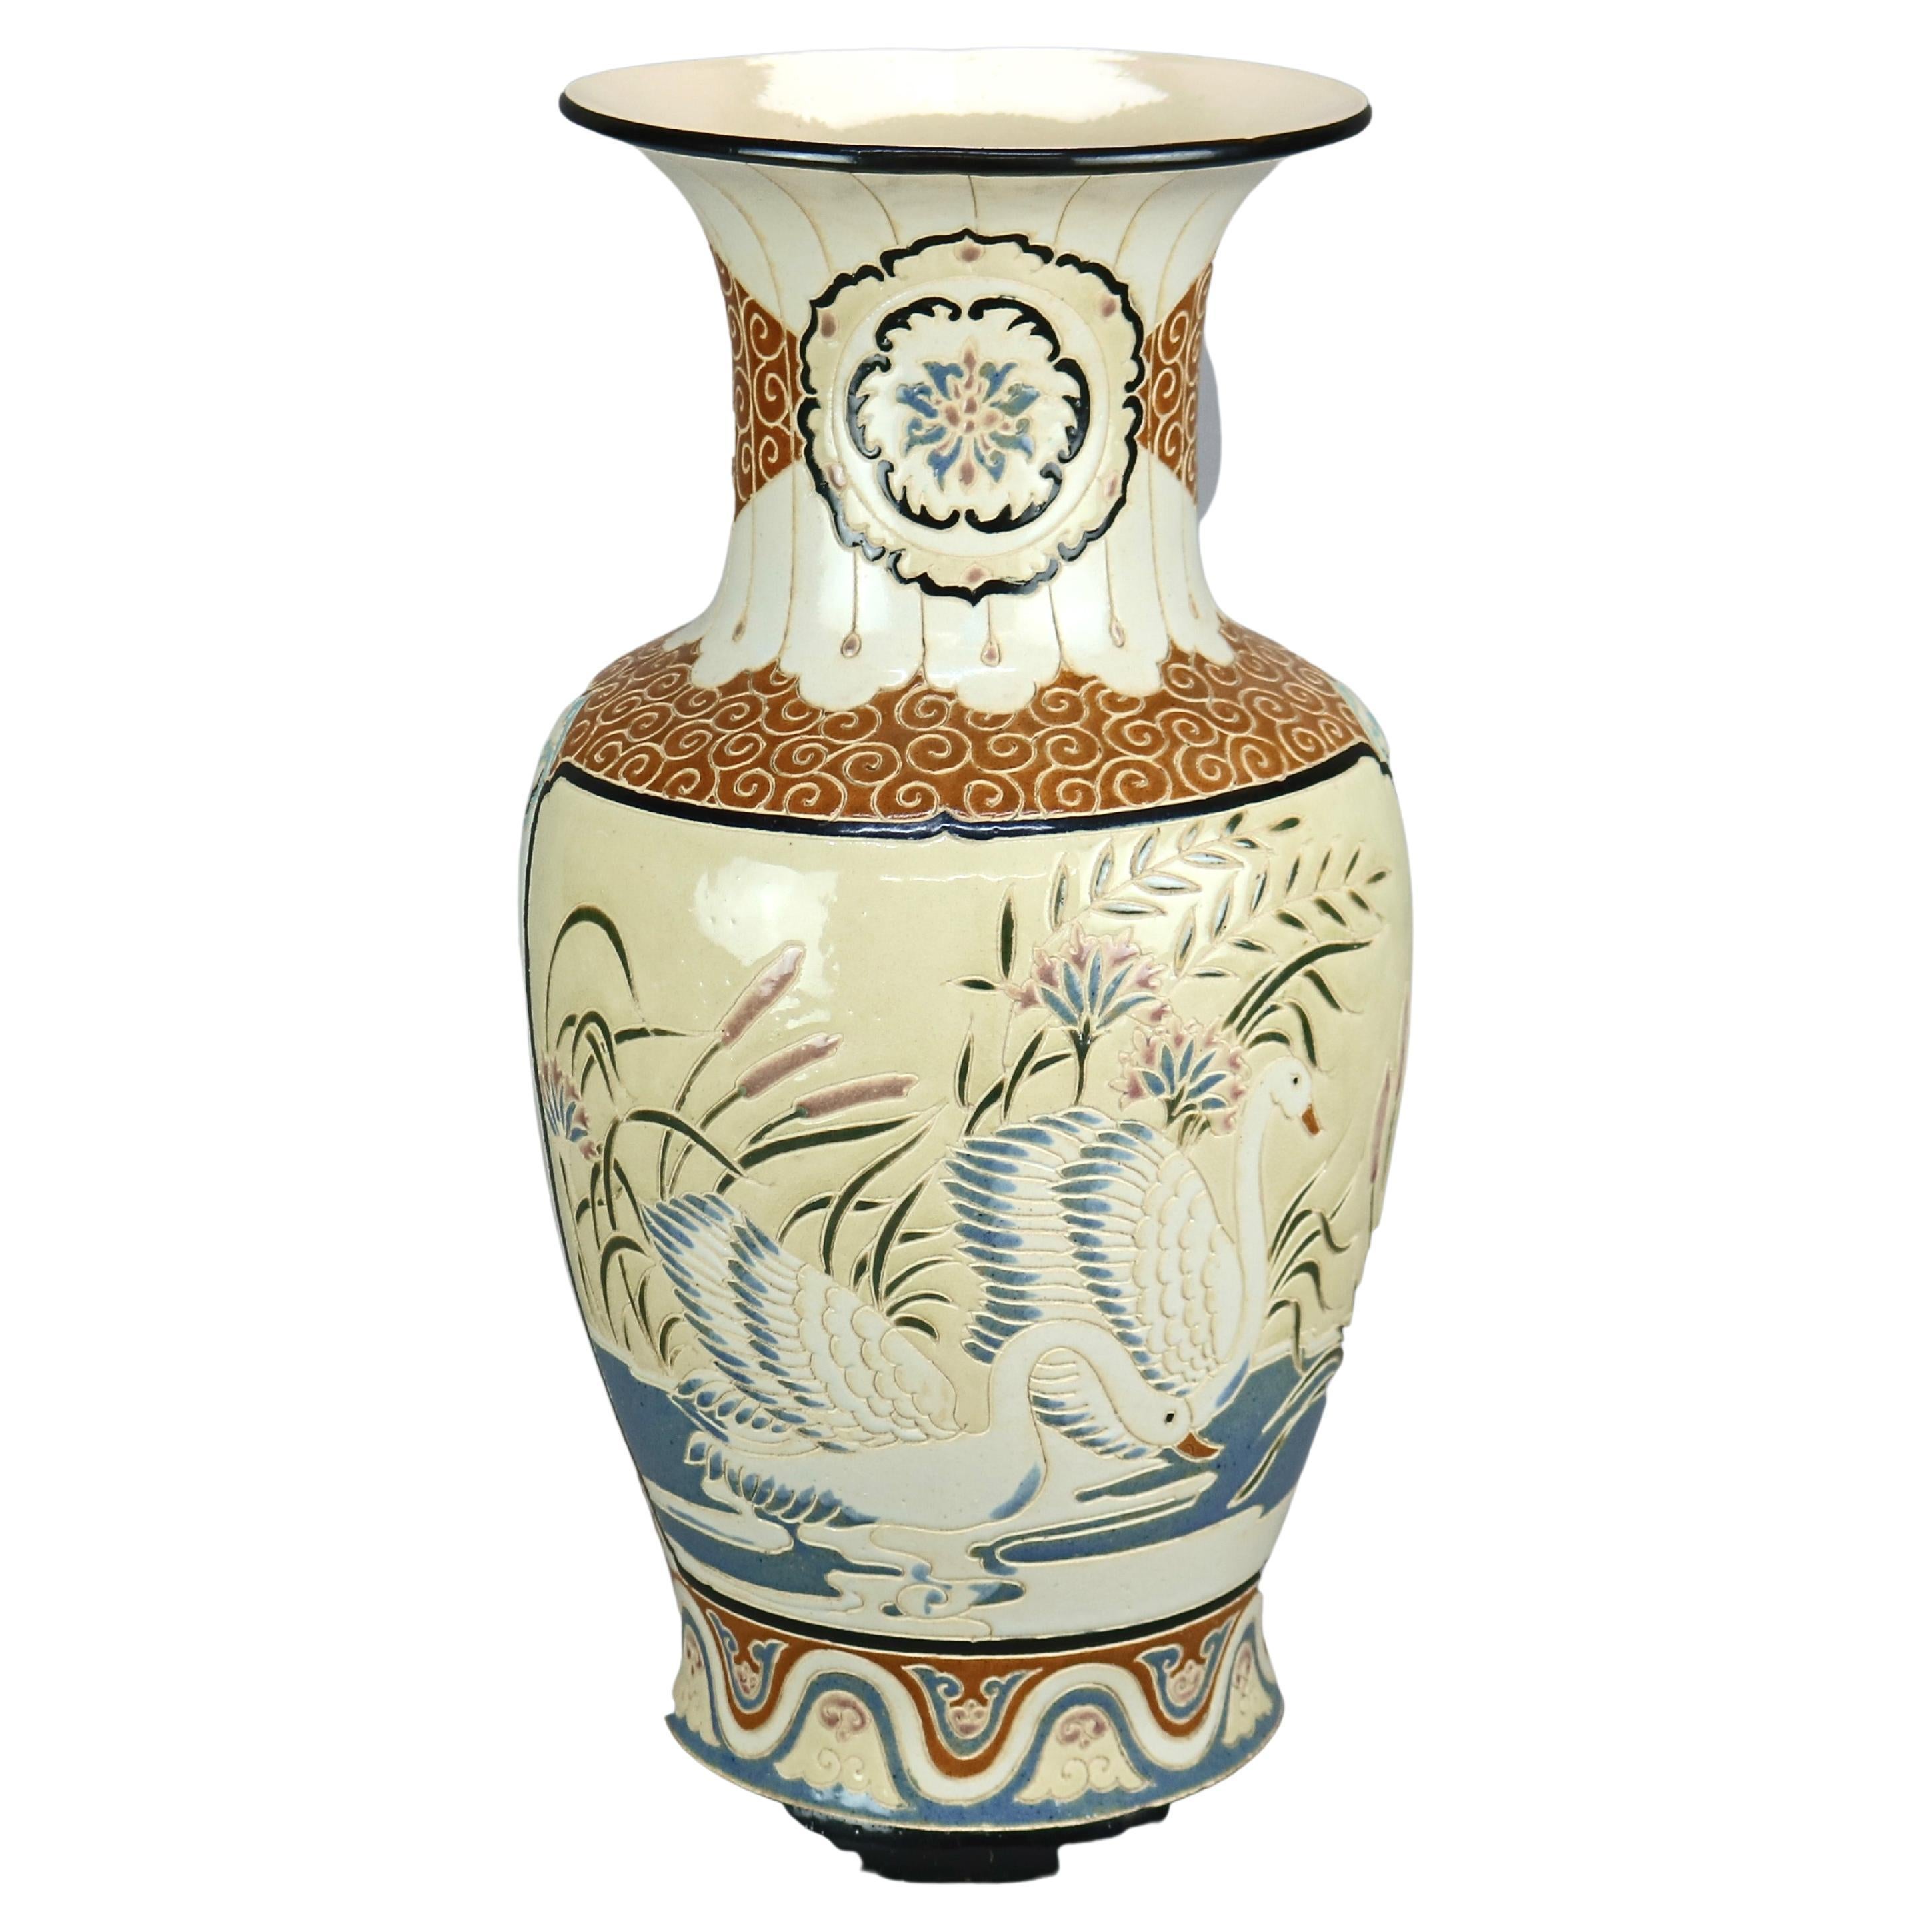 Oversized Antique Satsuma Style Engraved Pottery Swan Vase, Circa 1920